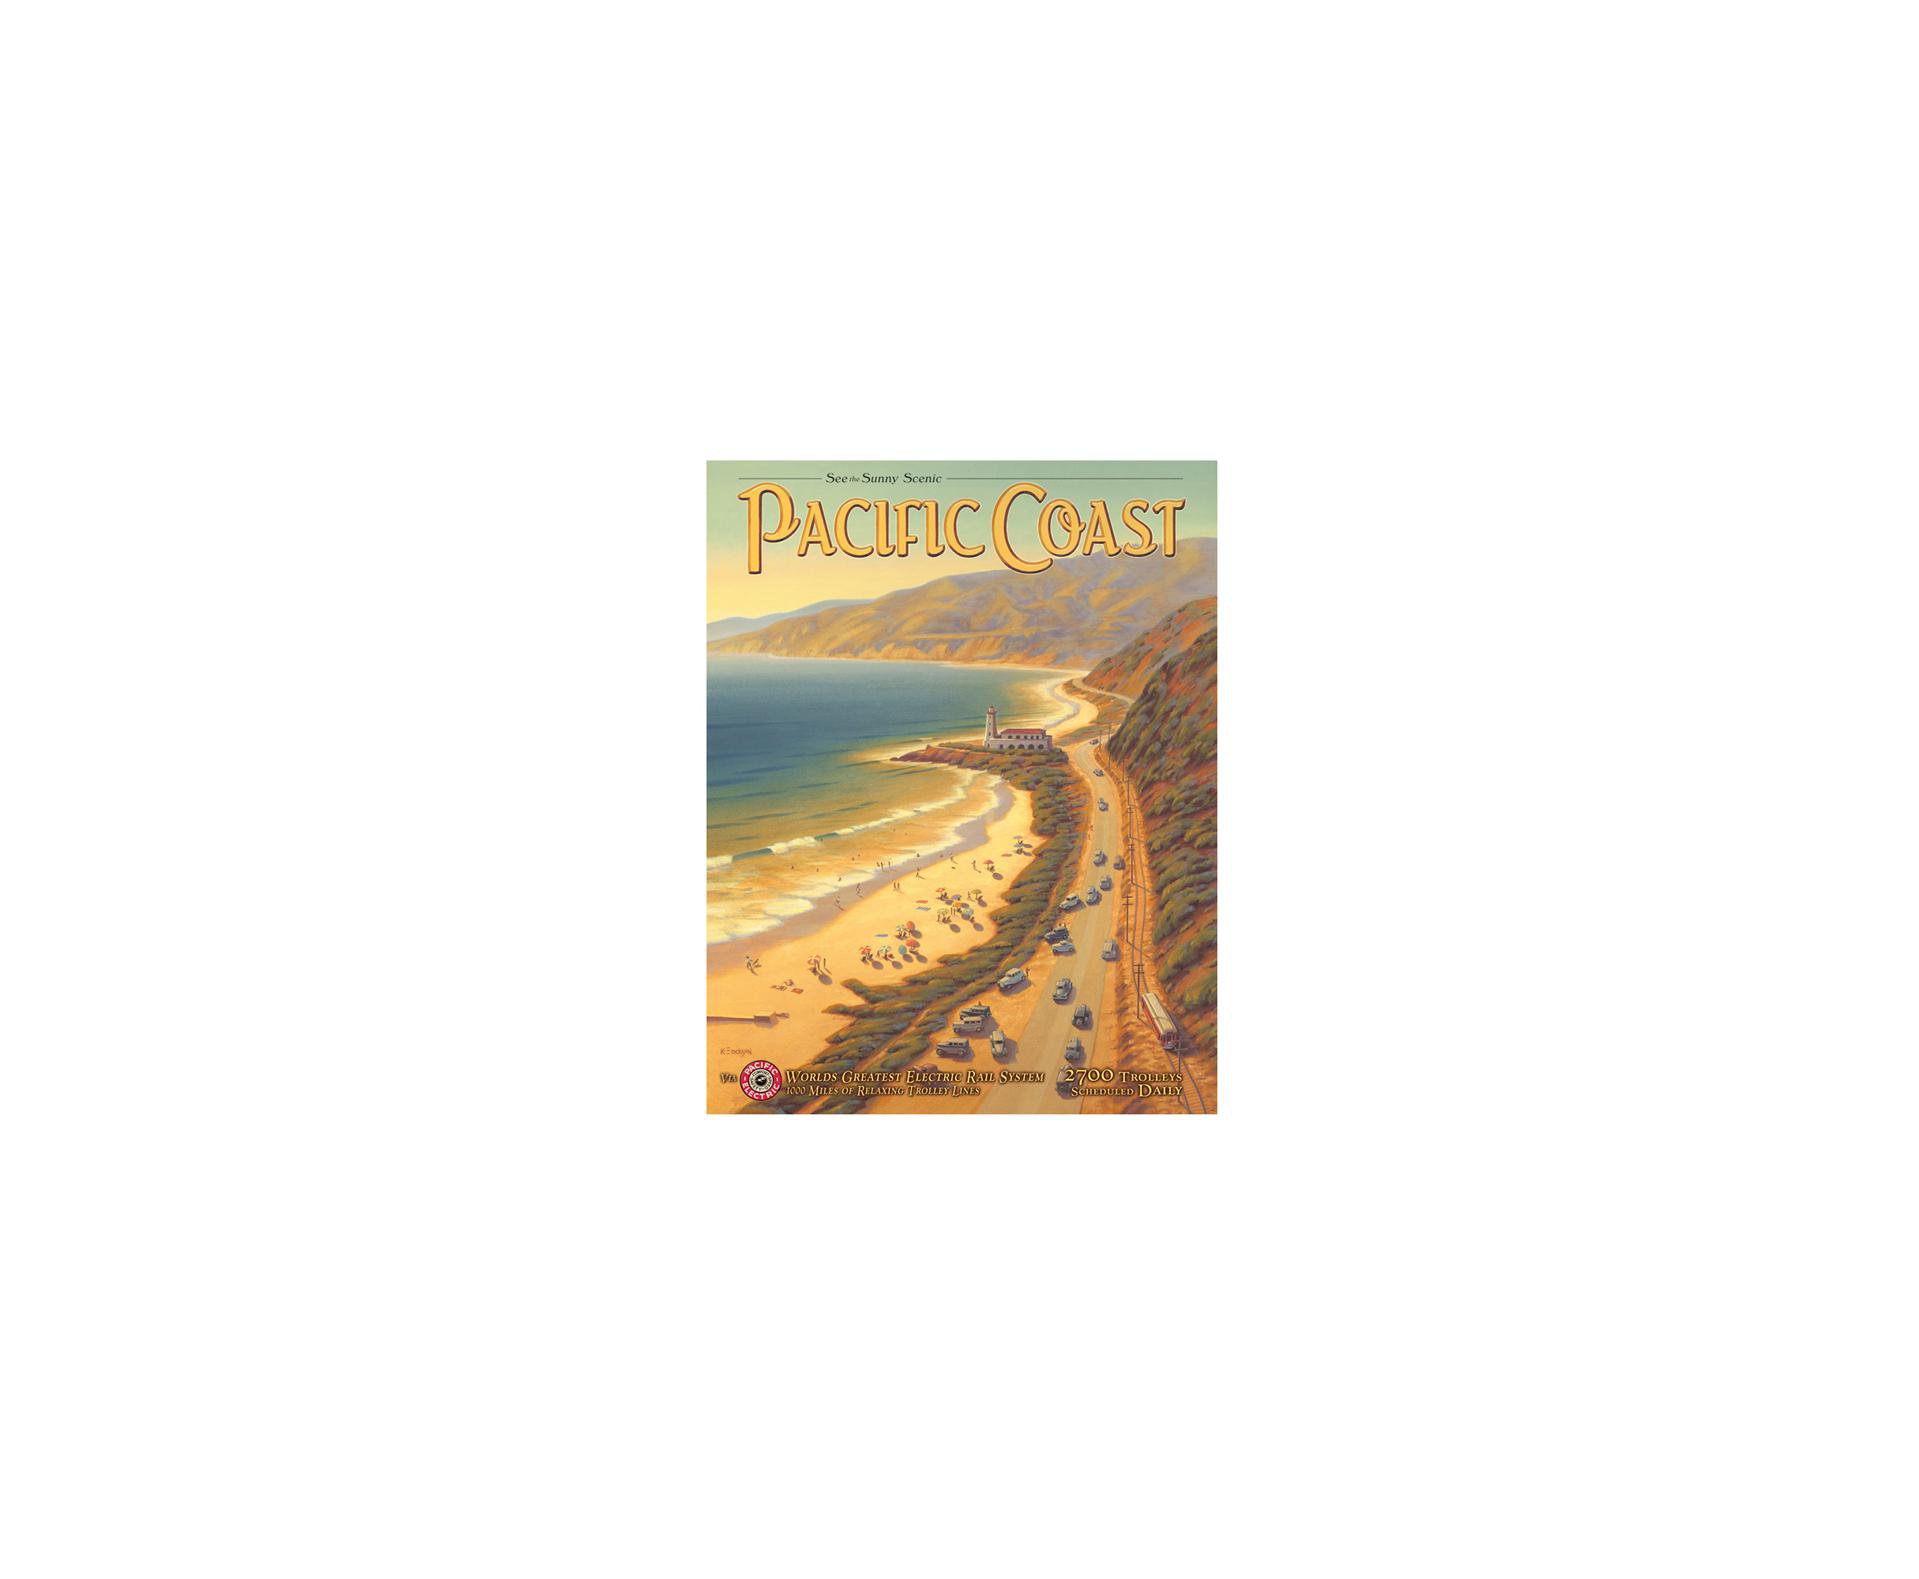 Placa Metálica Decorativa Pacific Coast - Rossi